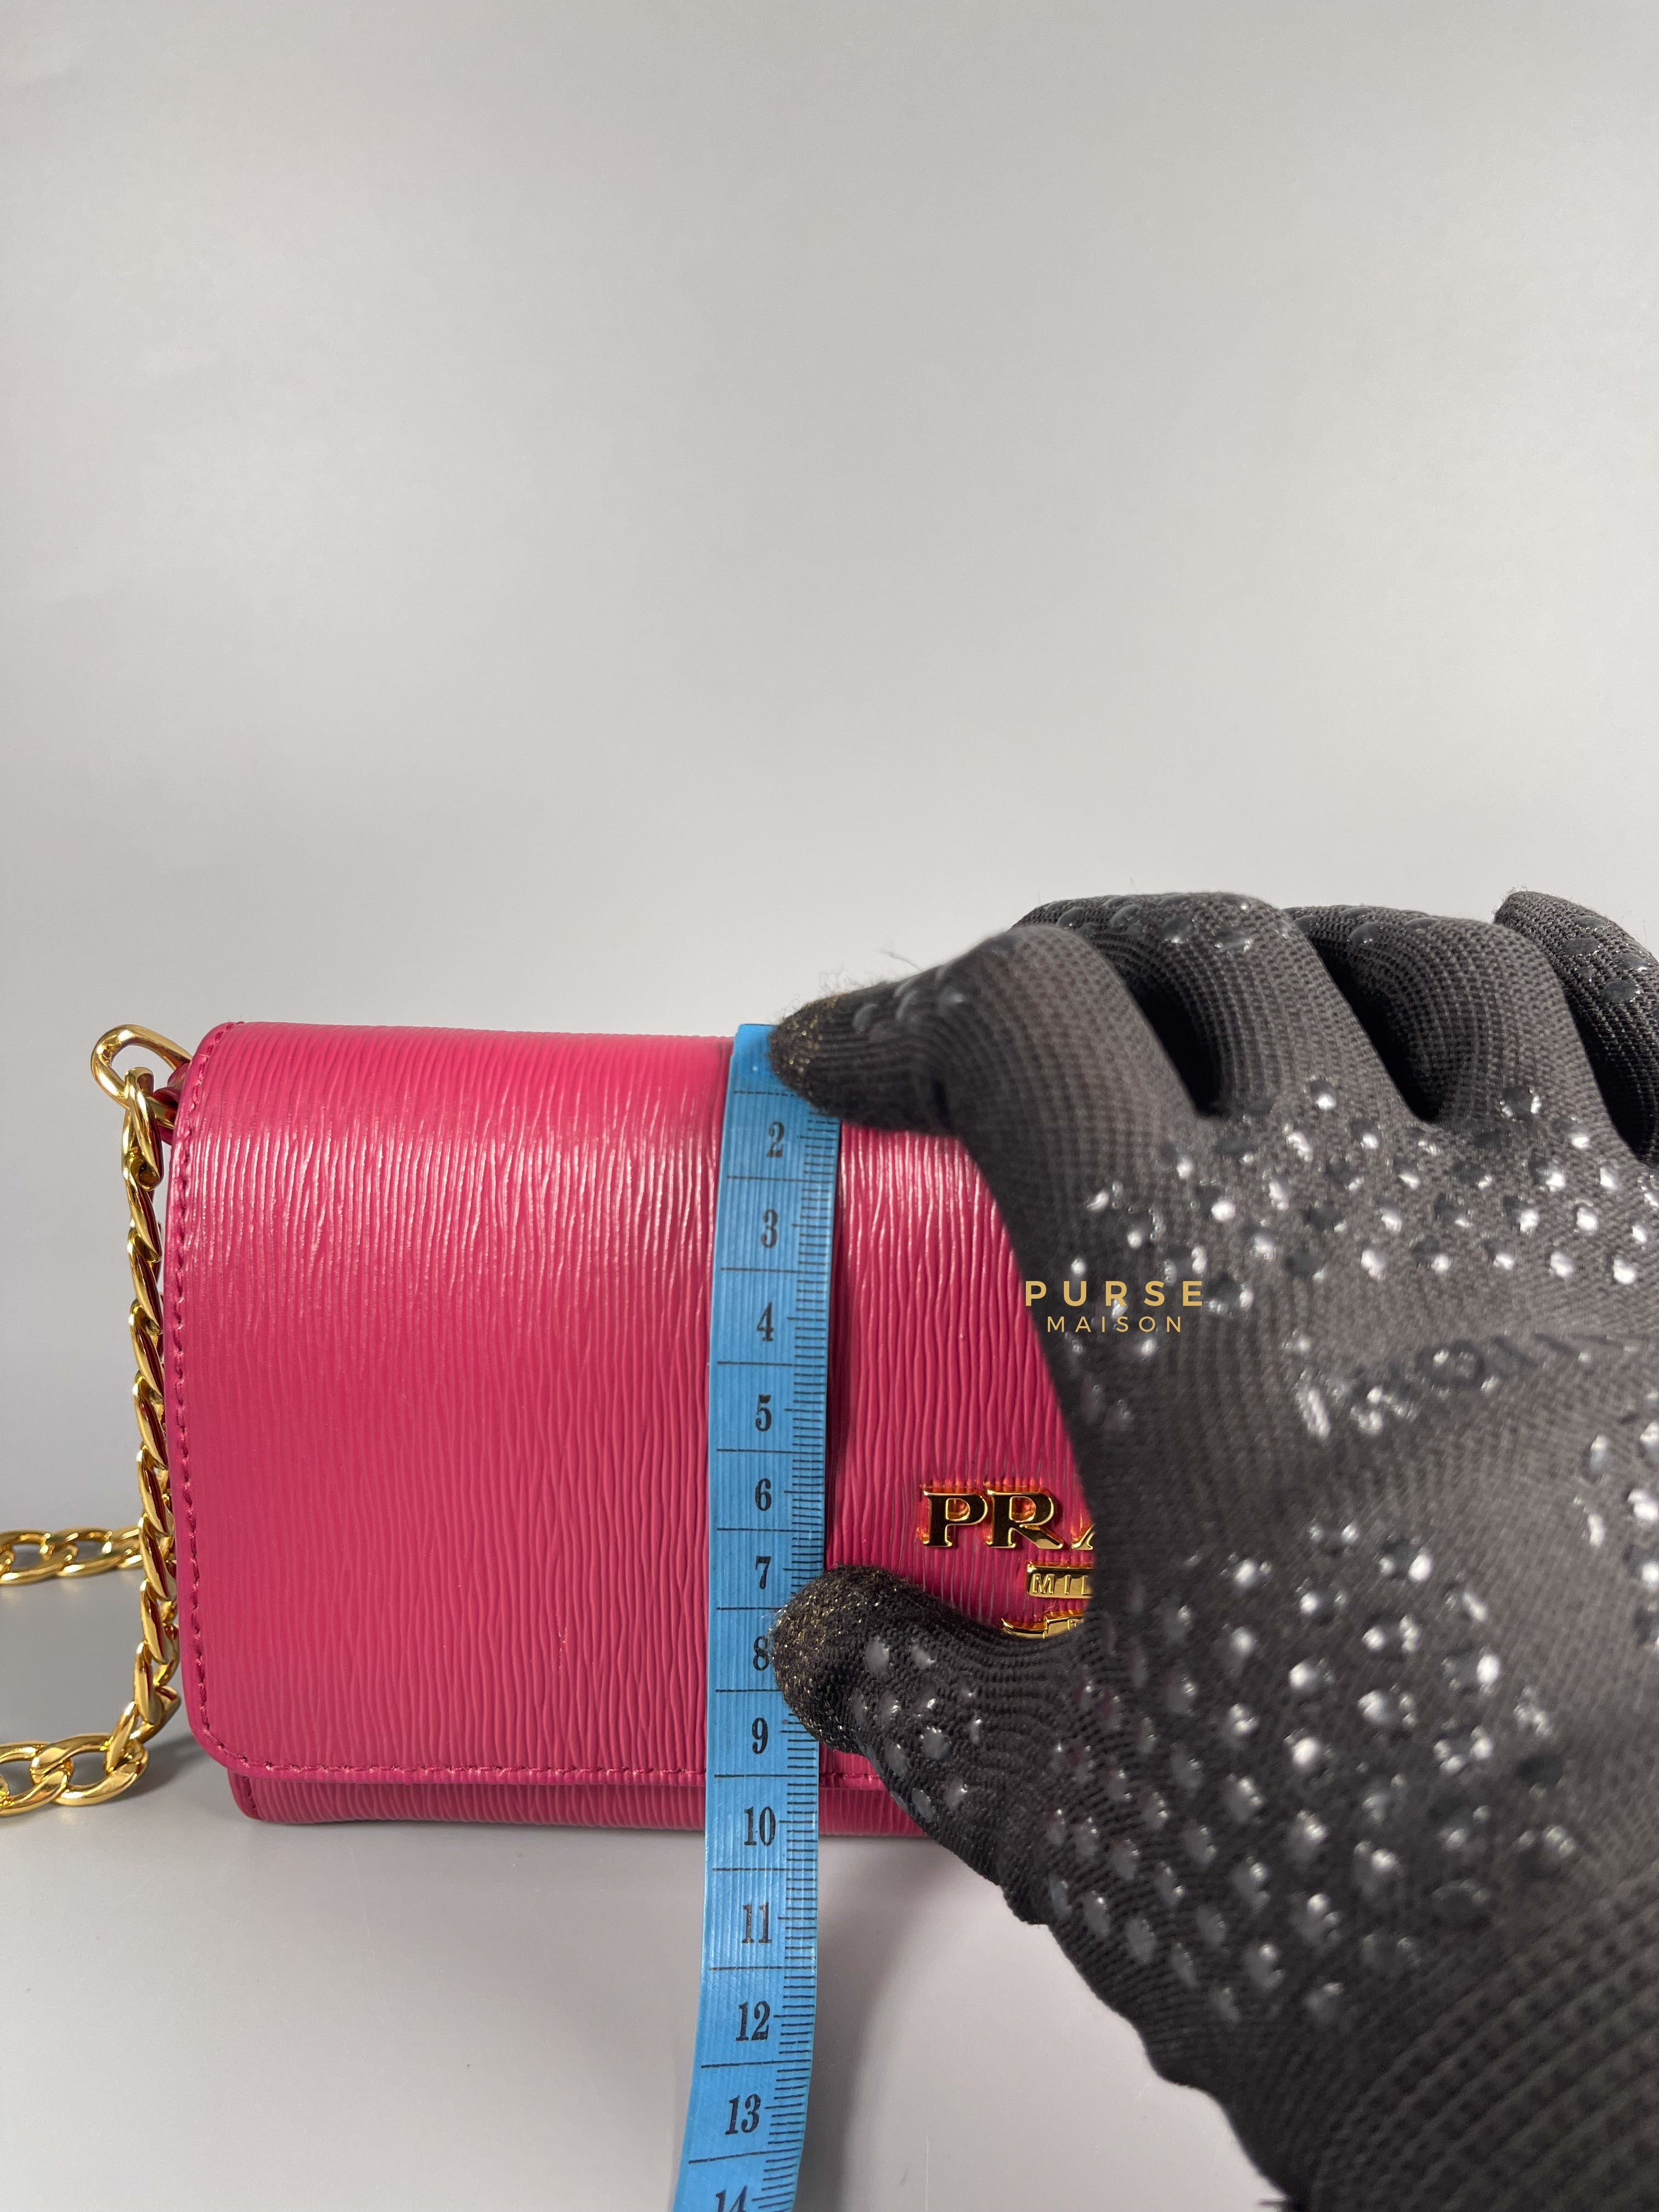 Prada 1BP290 Wallet On Chain Ibisco Vitello Move | Purse Maison Luxury Bags Shop